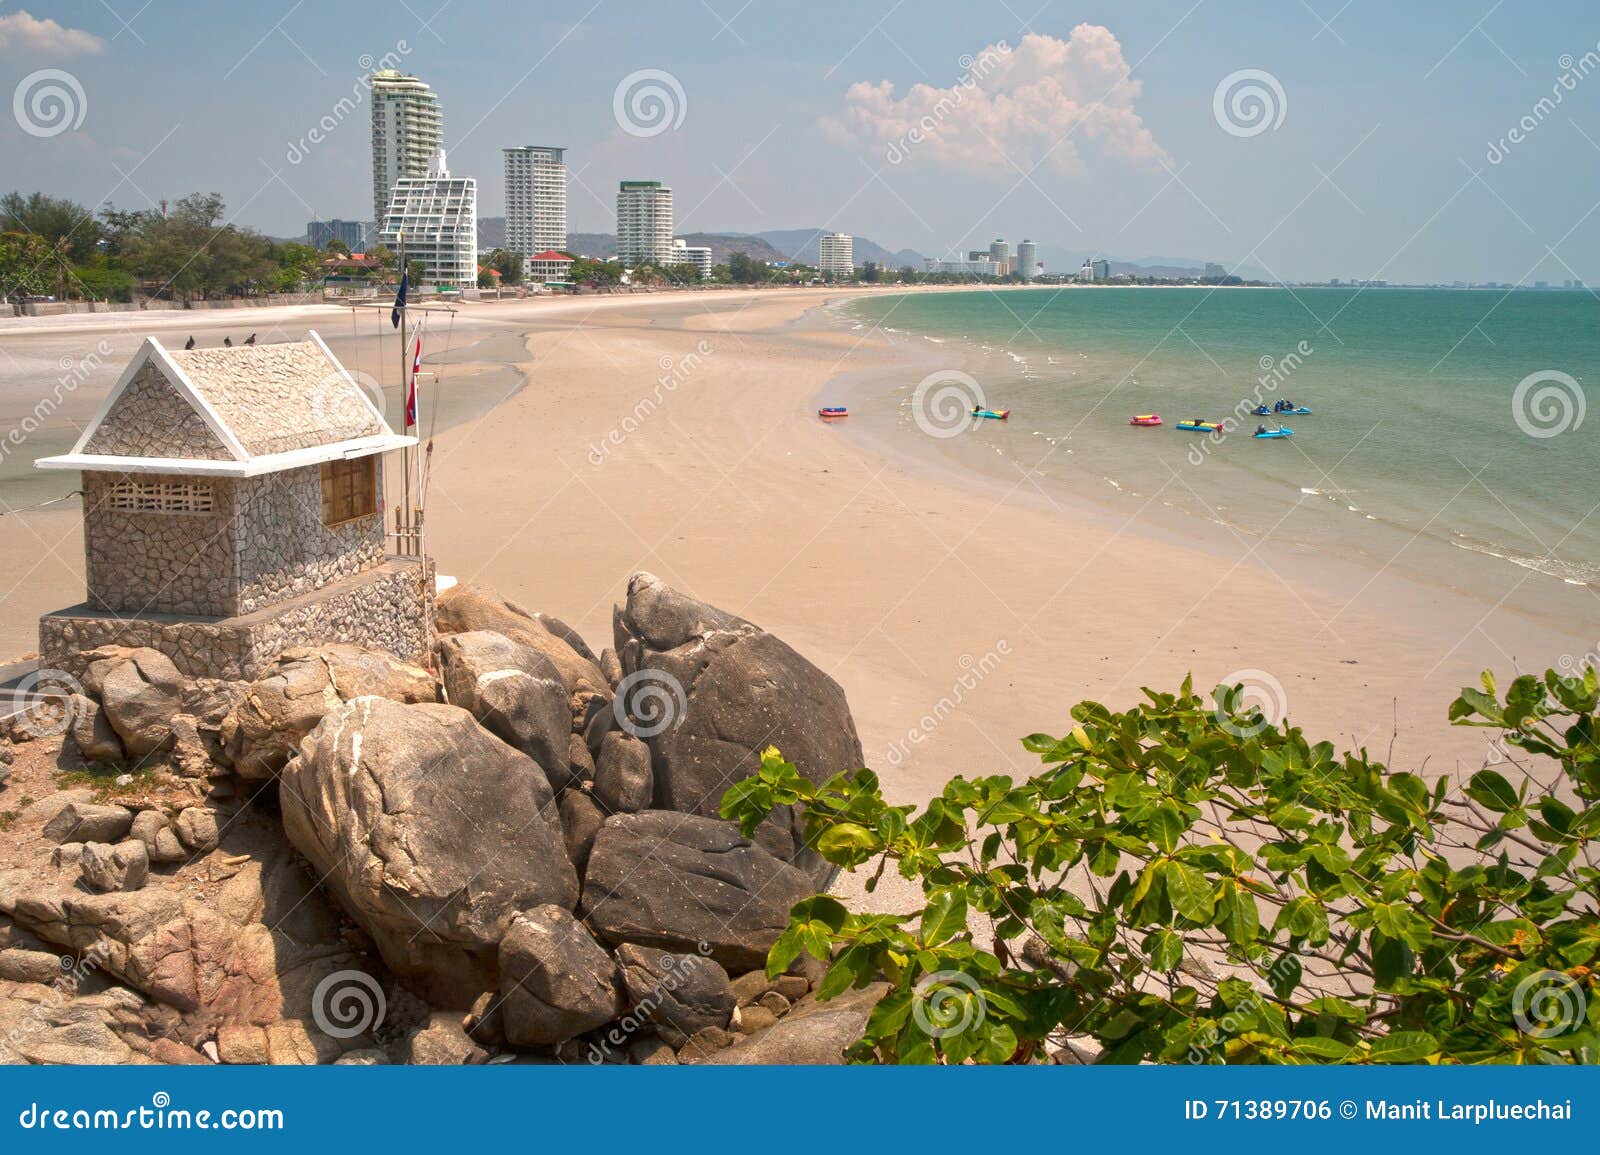 Hua Hin Beach From Khao Takiab Temple Thailand Stock Photo